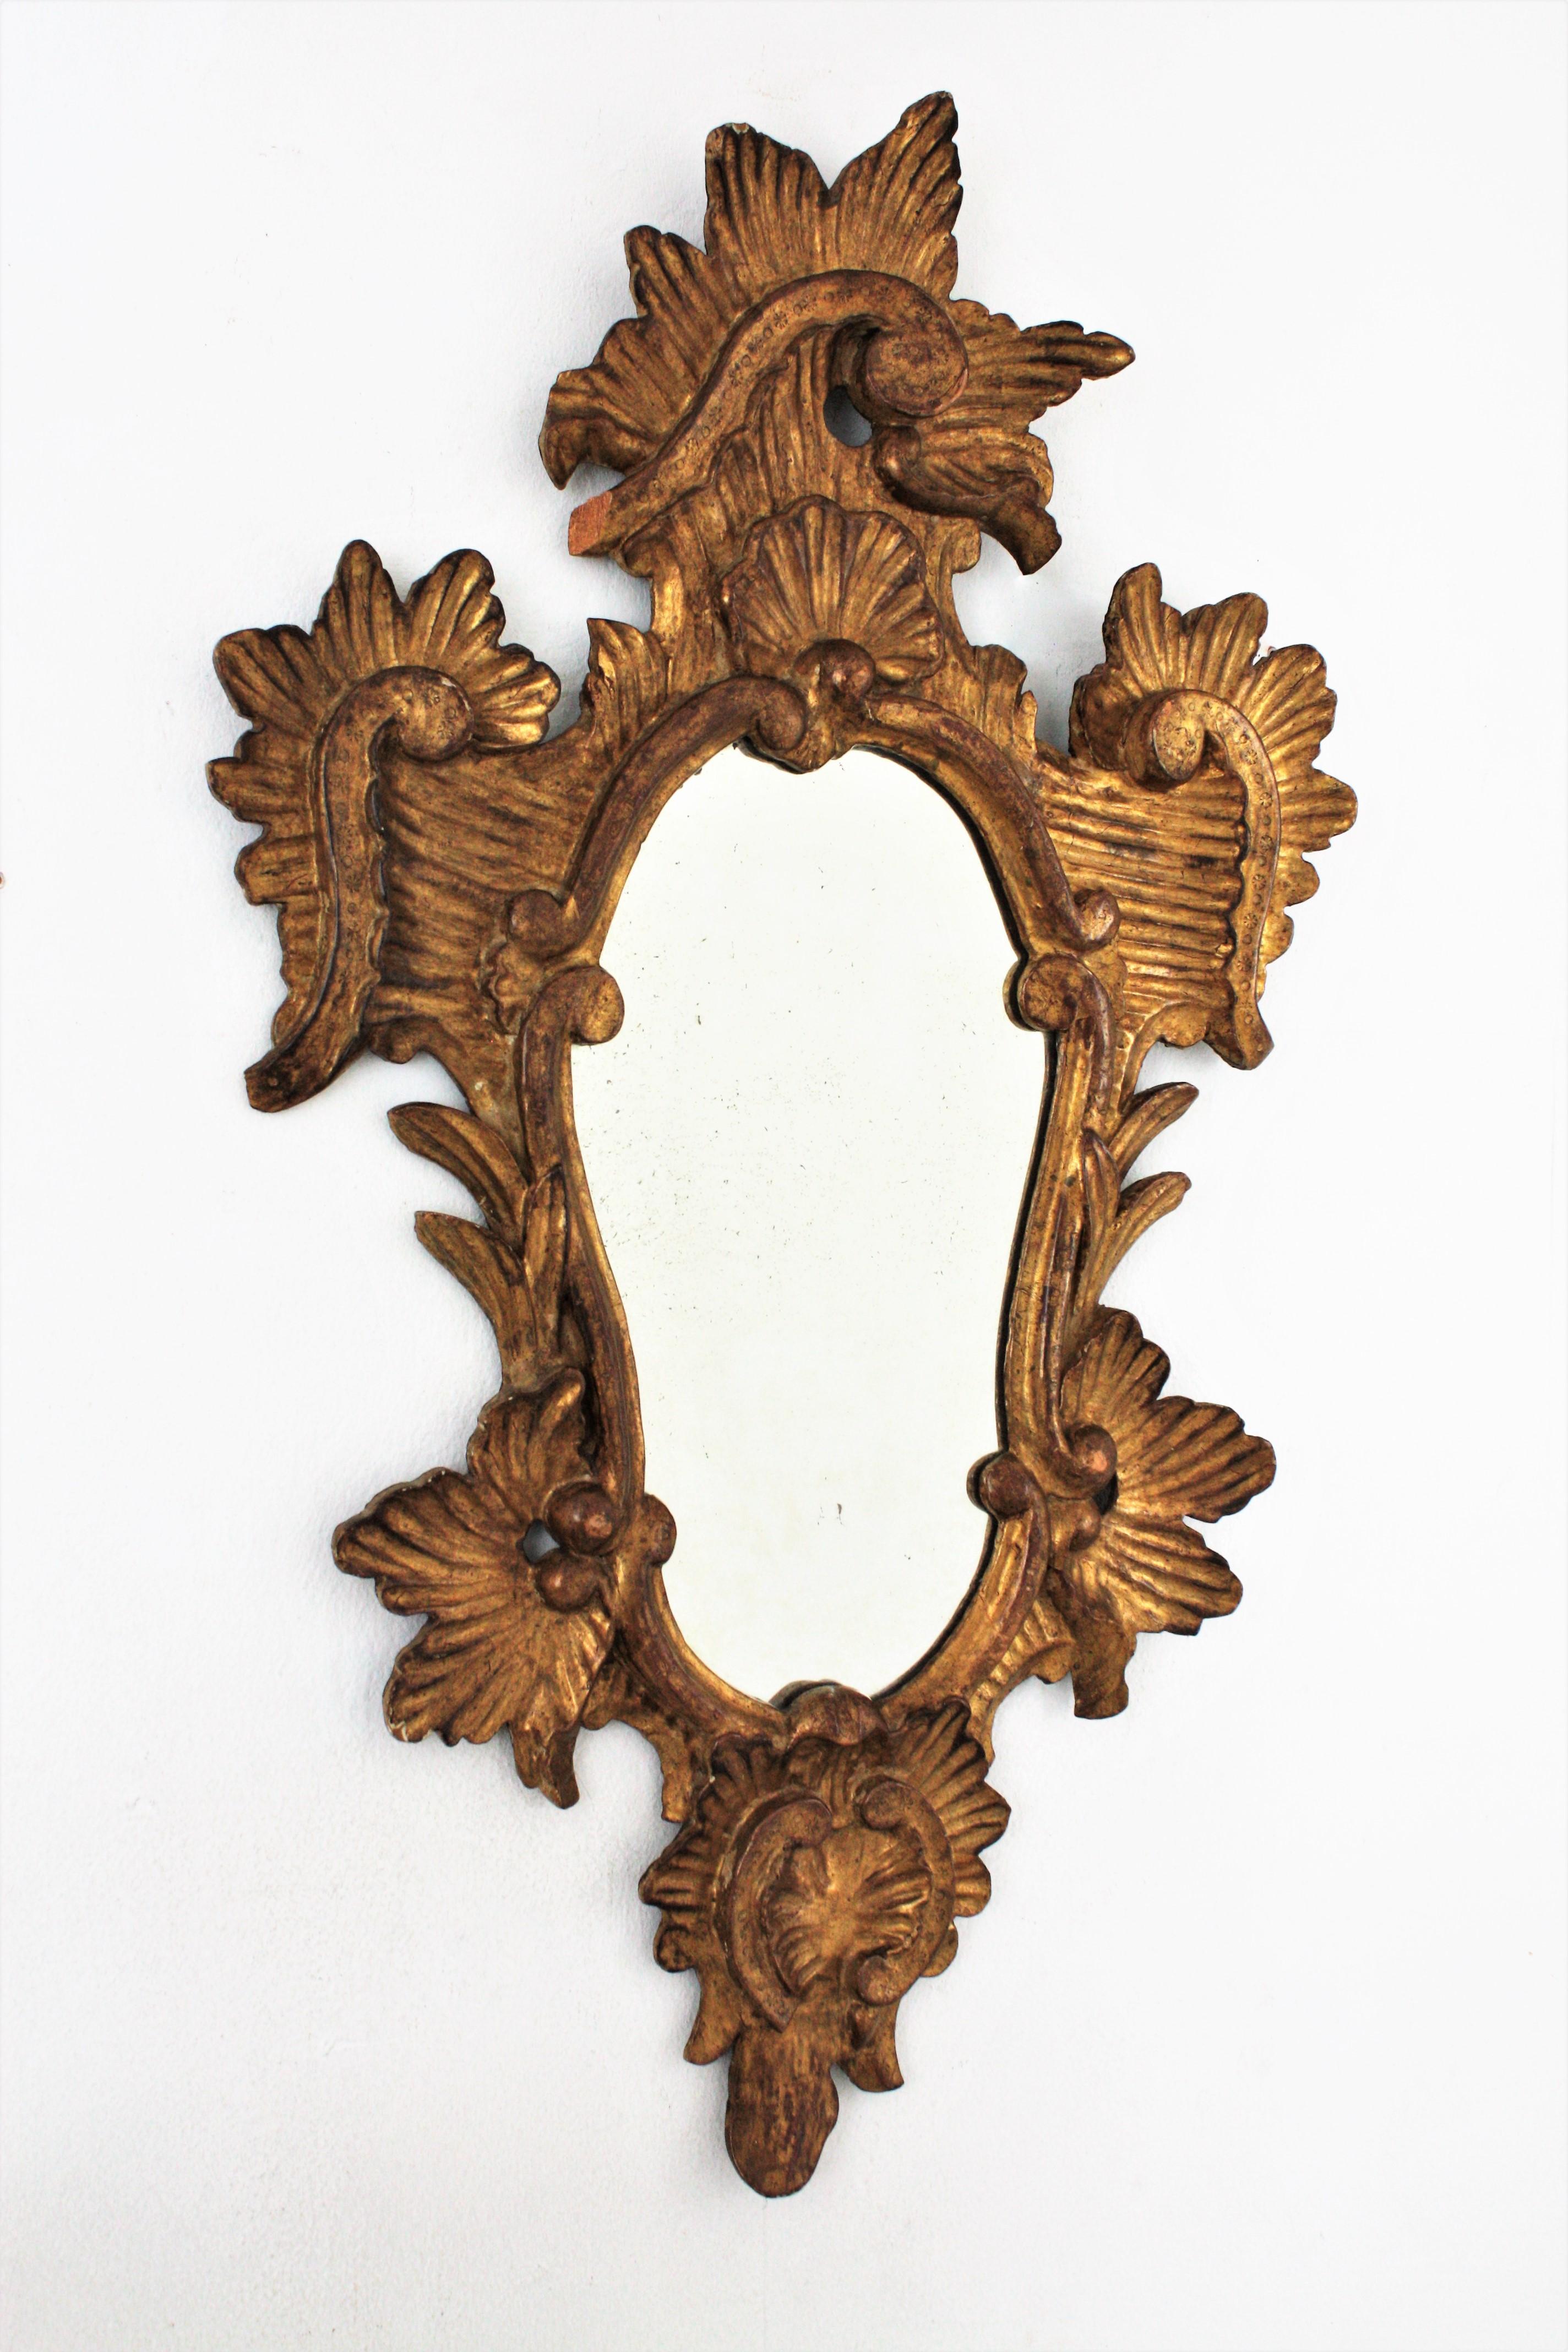 Impressionnant miroir mural ou miroir console en bois finement sculpté et doré de style Rococo. Italie, années 1930-1940.
Ce cadre très décoratif en bois sculpté de rinceaux et de feuilles est recouvert de gesso et présente une belle patine antique